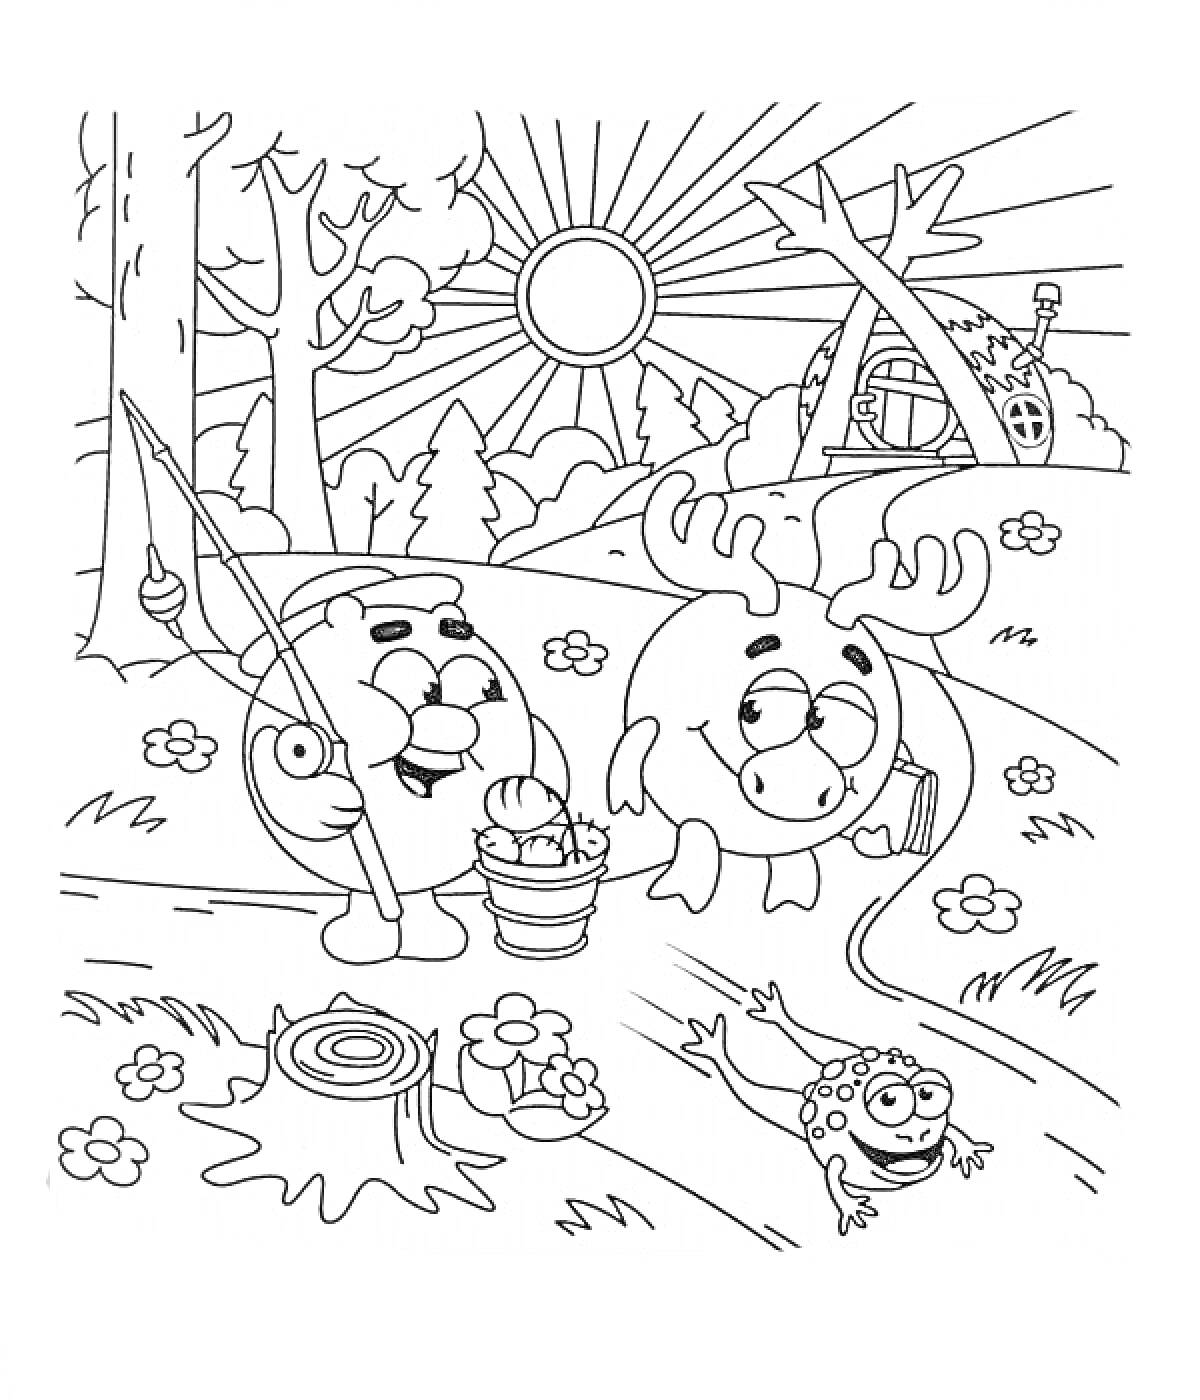 Раскраска Смешарики ловят рыбу на природе (два персонажа Смешариков, лес, солнце, домик, удочка, ведро, рыбка, лягушка, пеньки, цветы, деревья)